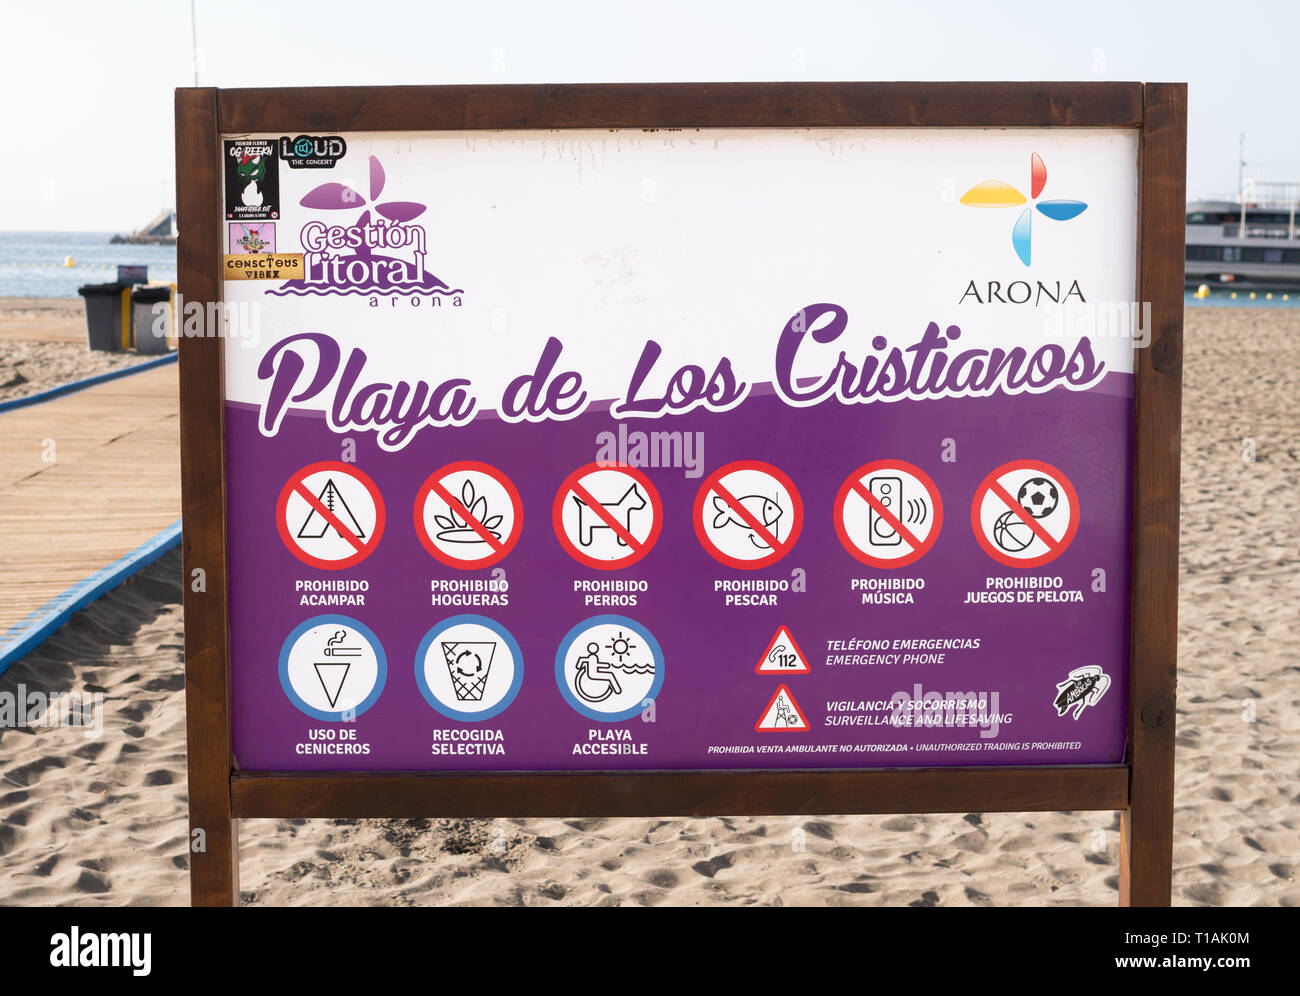 Observe que muestra una lista de actividades prohibidas en la Playa de Los Cristianos, Arona, Tenerife, Islas Canarias Foto de stock